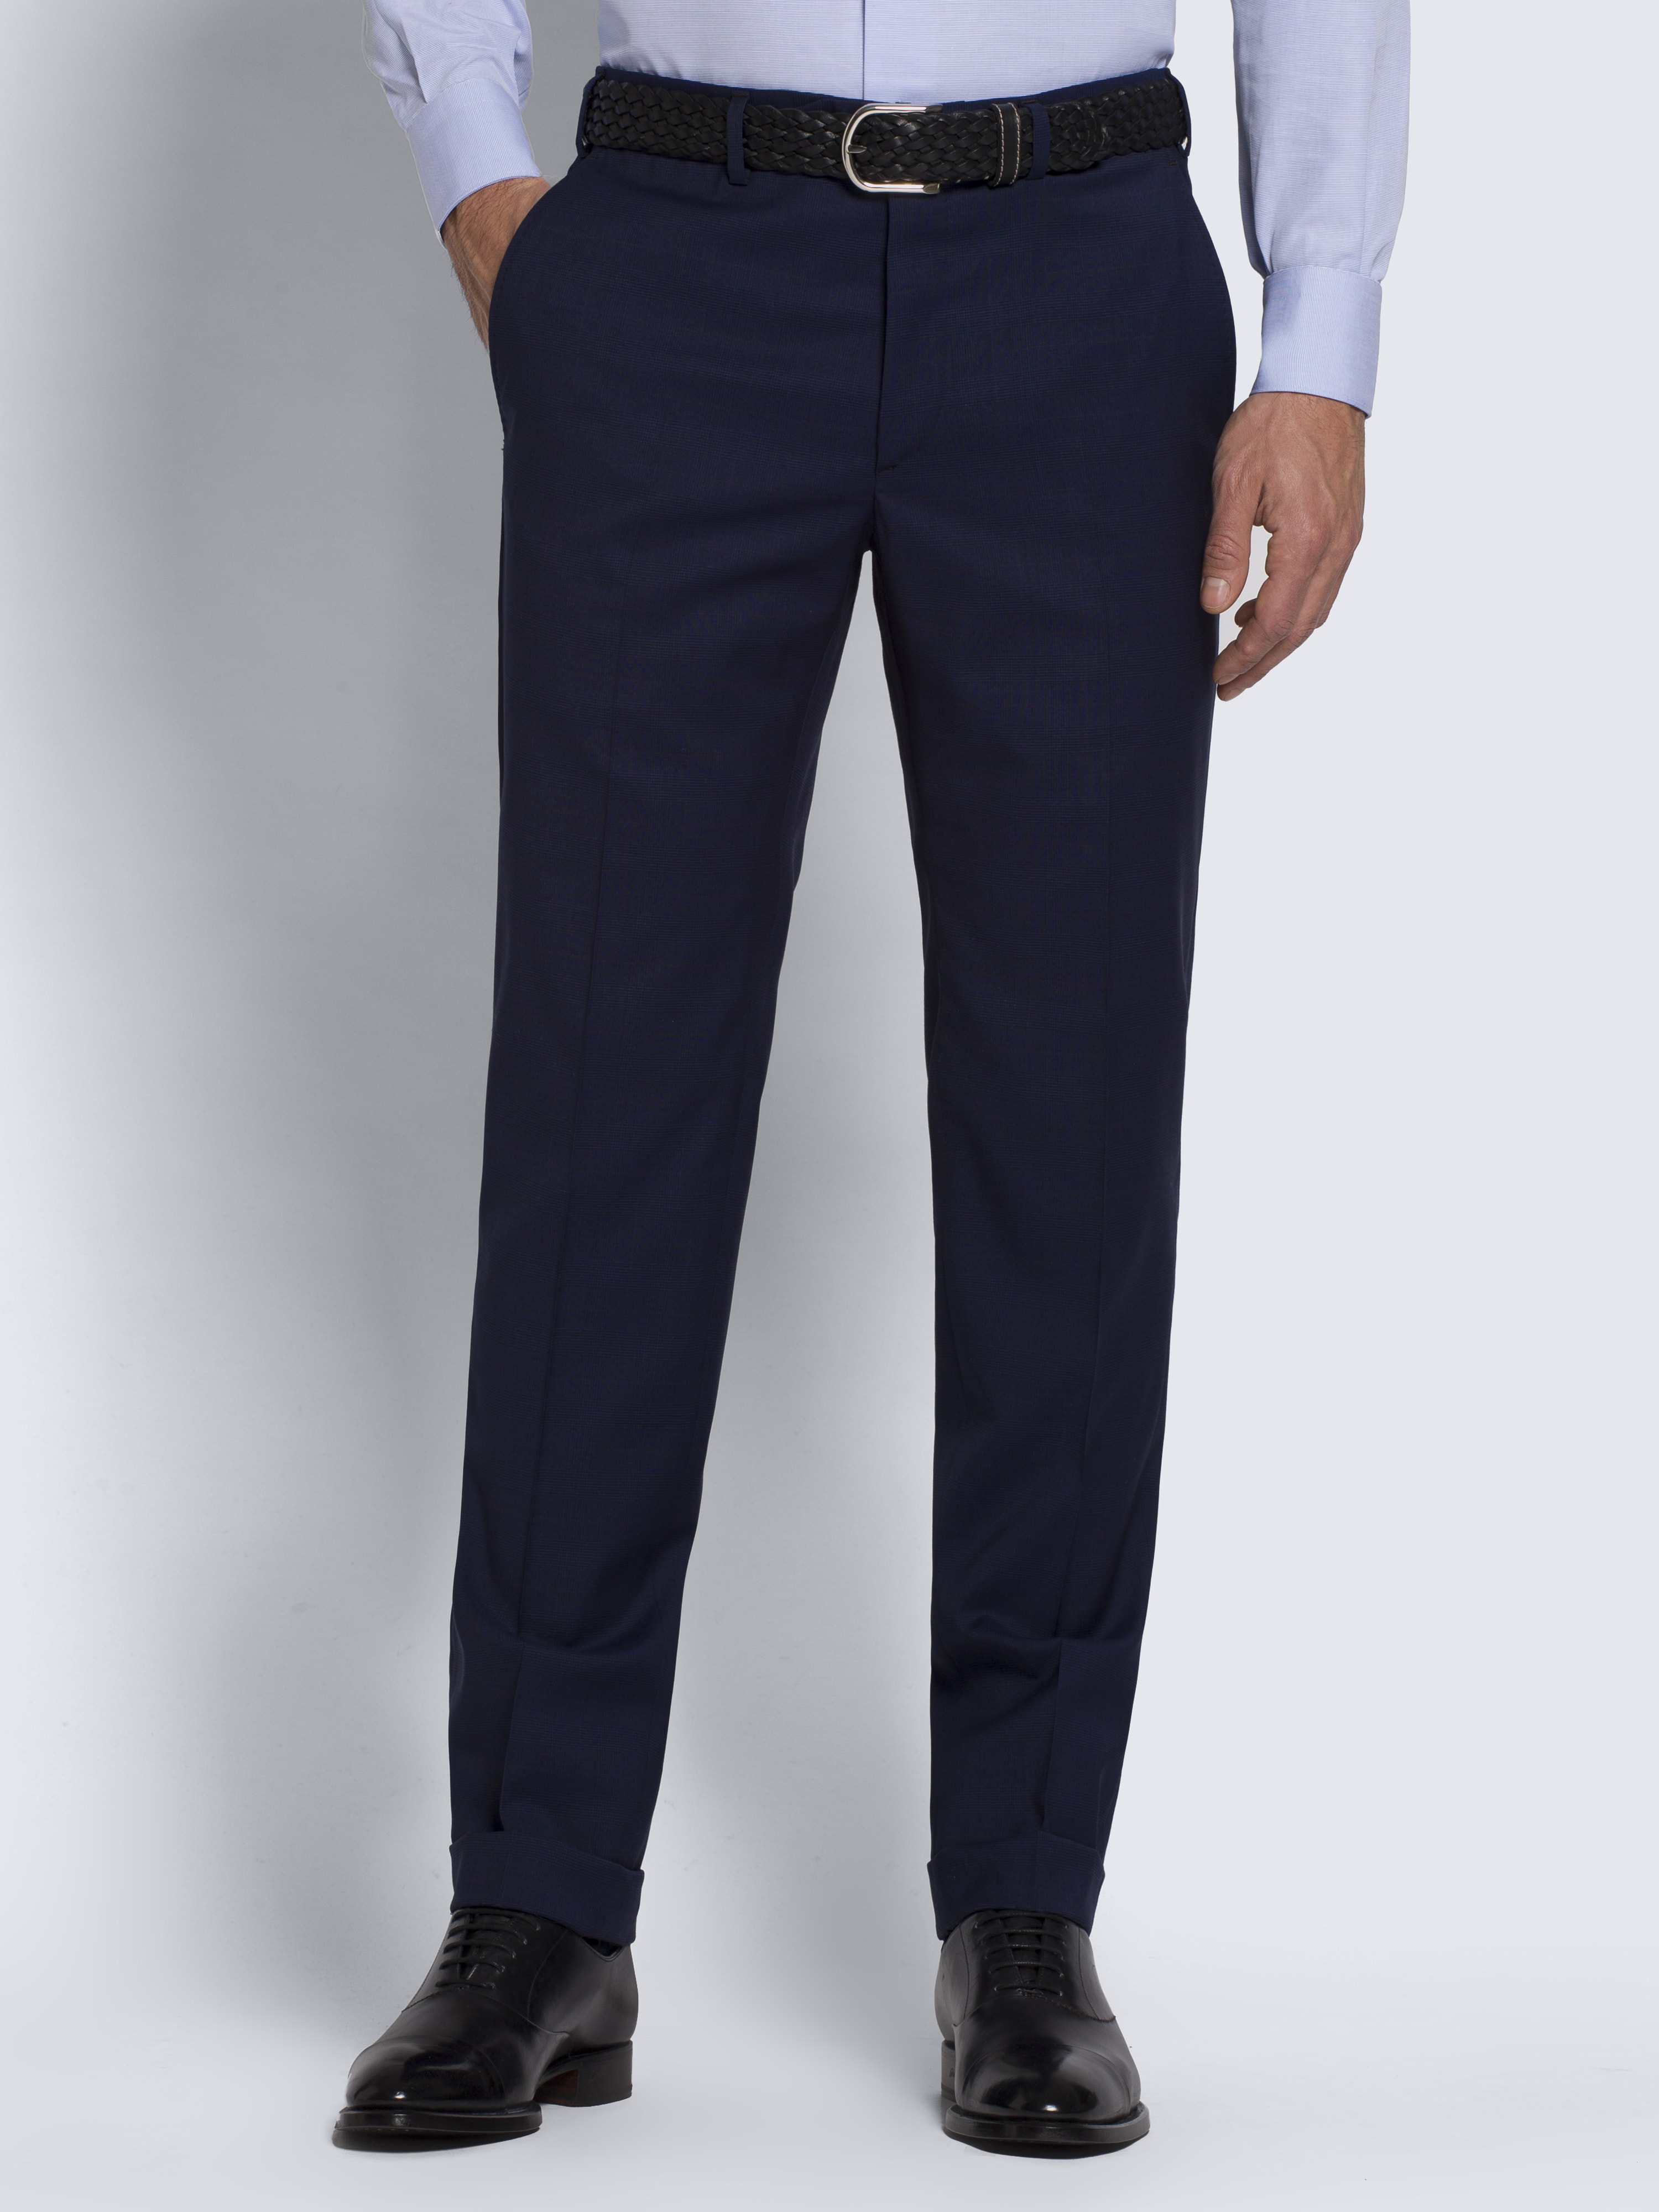 Royal blue Pre-Couture Ventiquattro suit